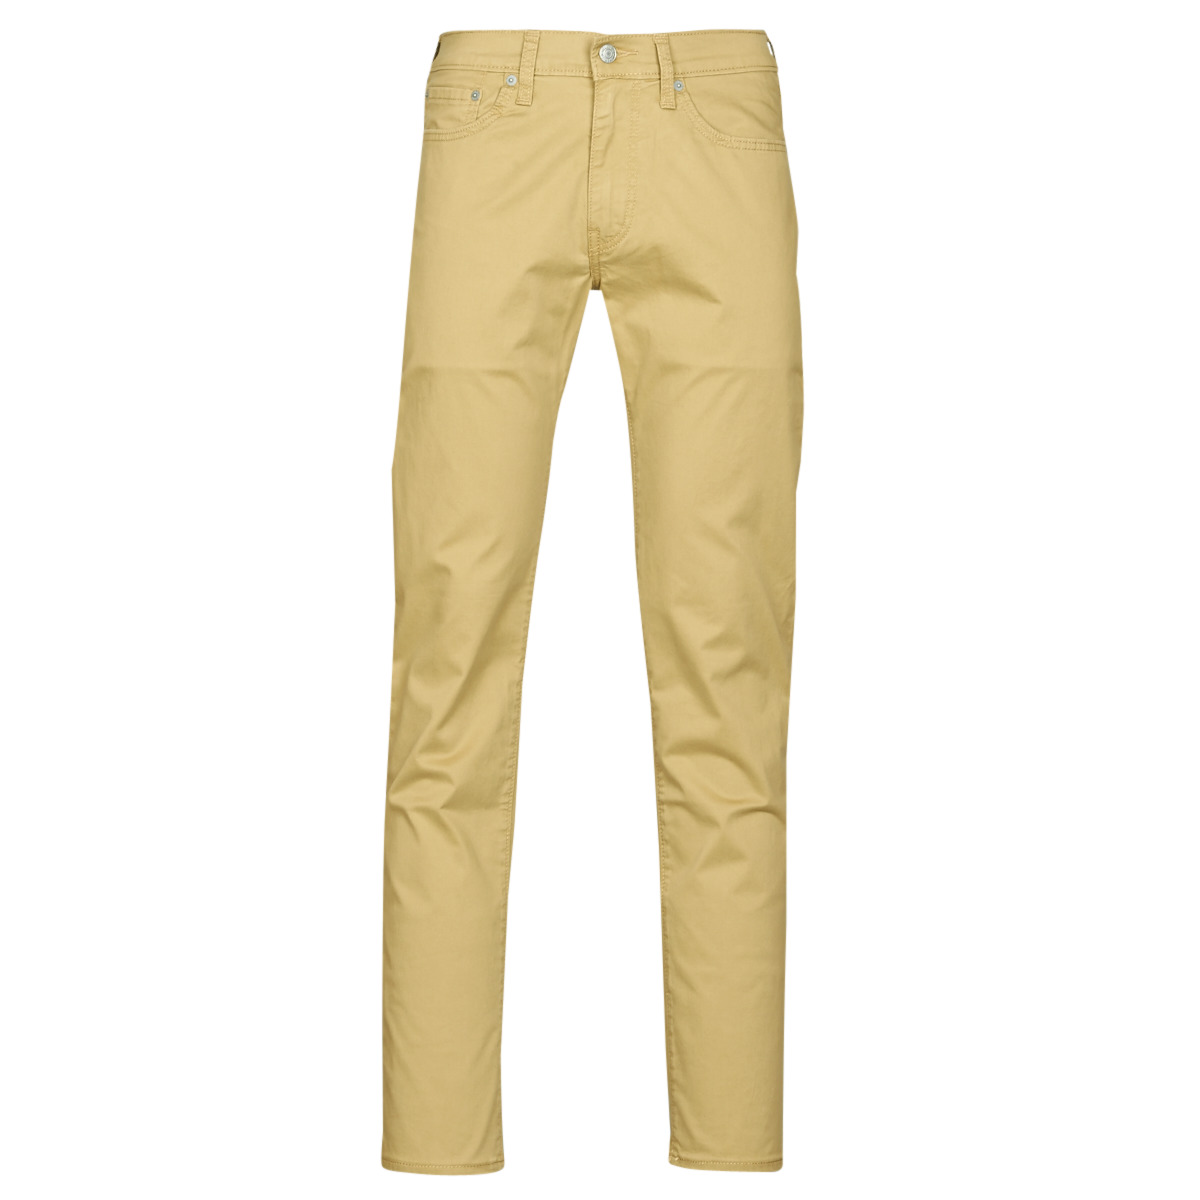 levis 511 beige jeans